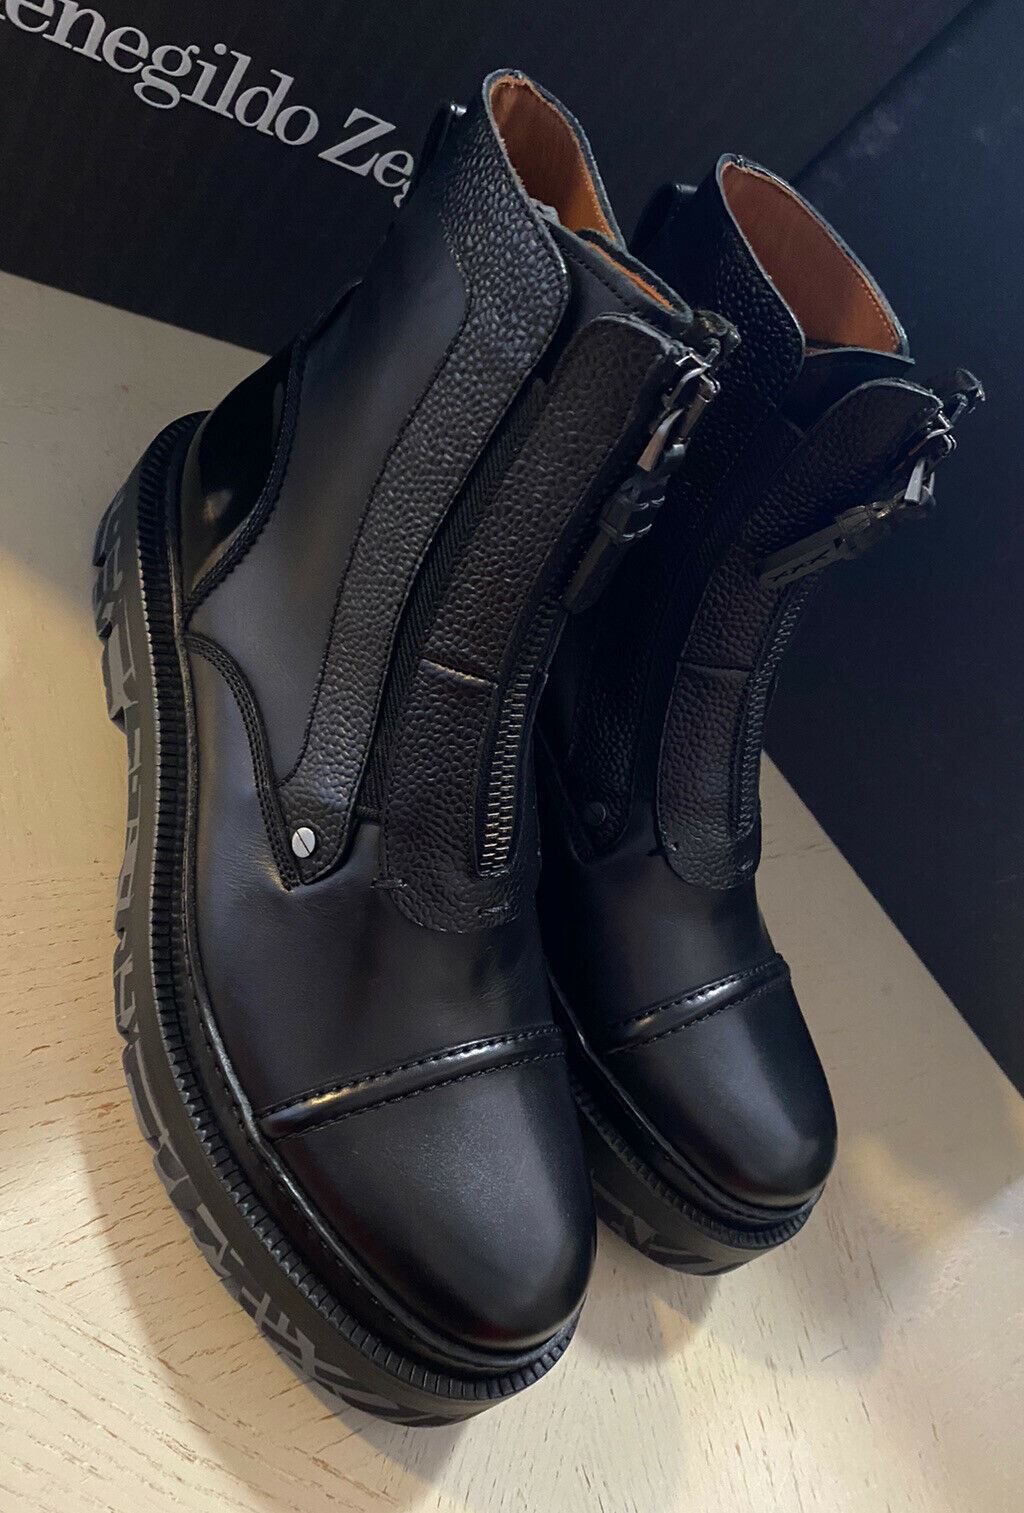 Neu $ 1595 Ermenegildo Zegna Couture Leder Leichte Stiefel Schuhe Schwarz 8 US Italien